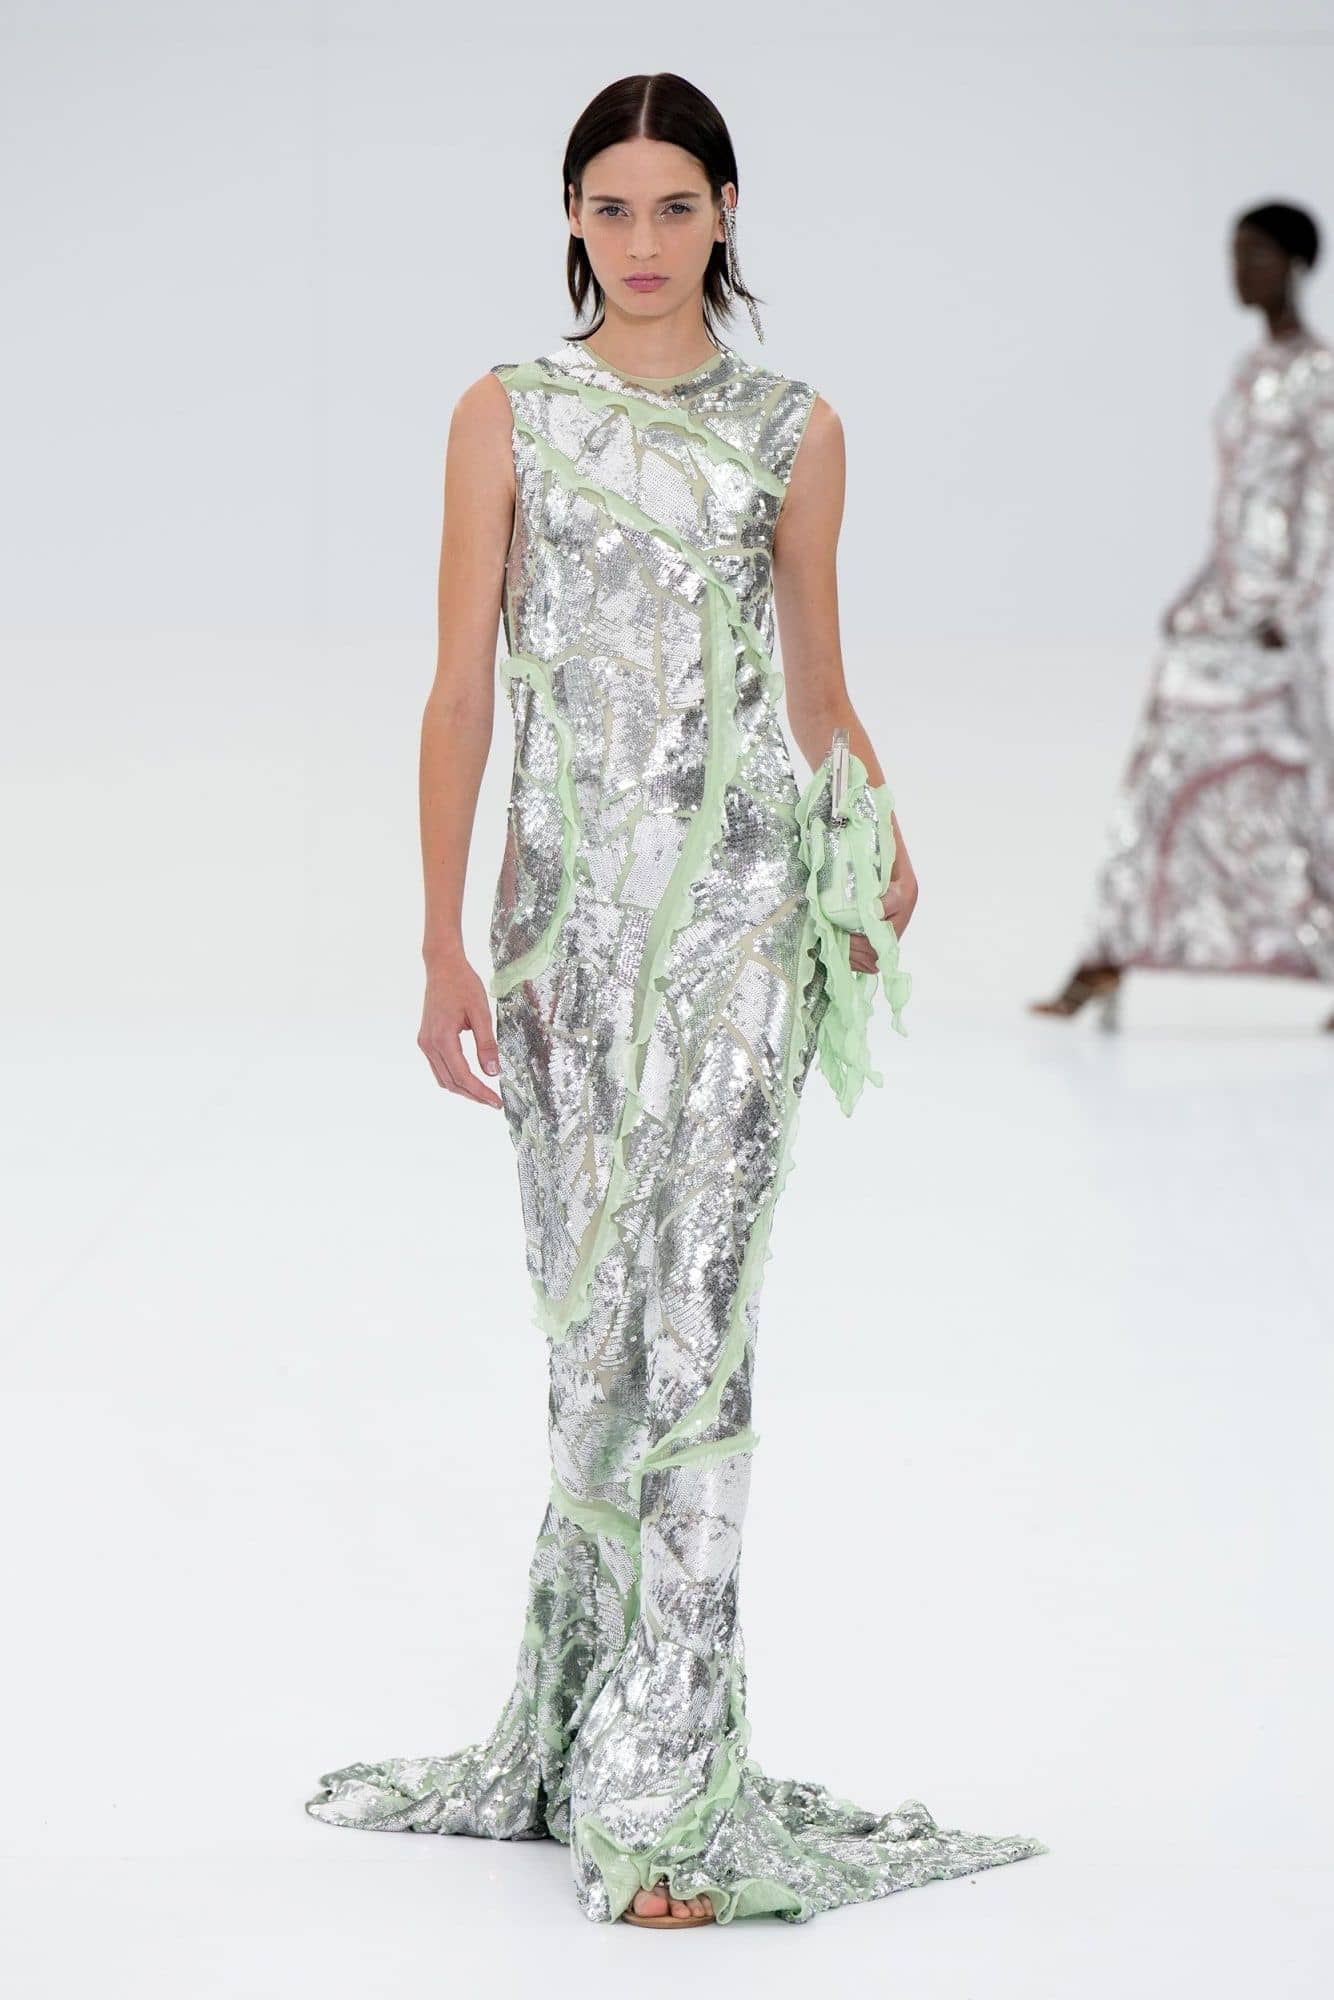 Fendi model sports a metallic dress for July's Paris Fashion Week 2022.